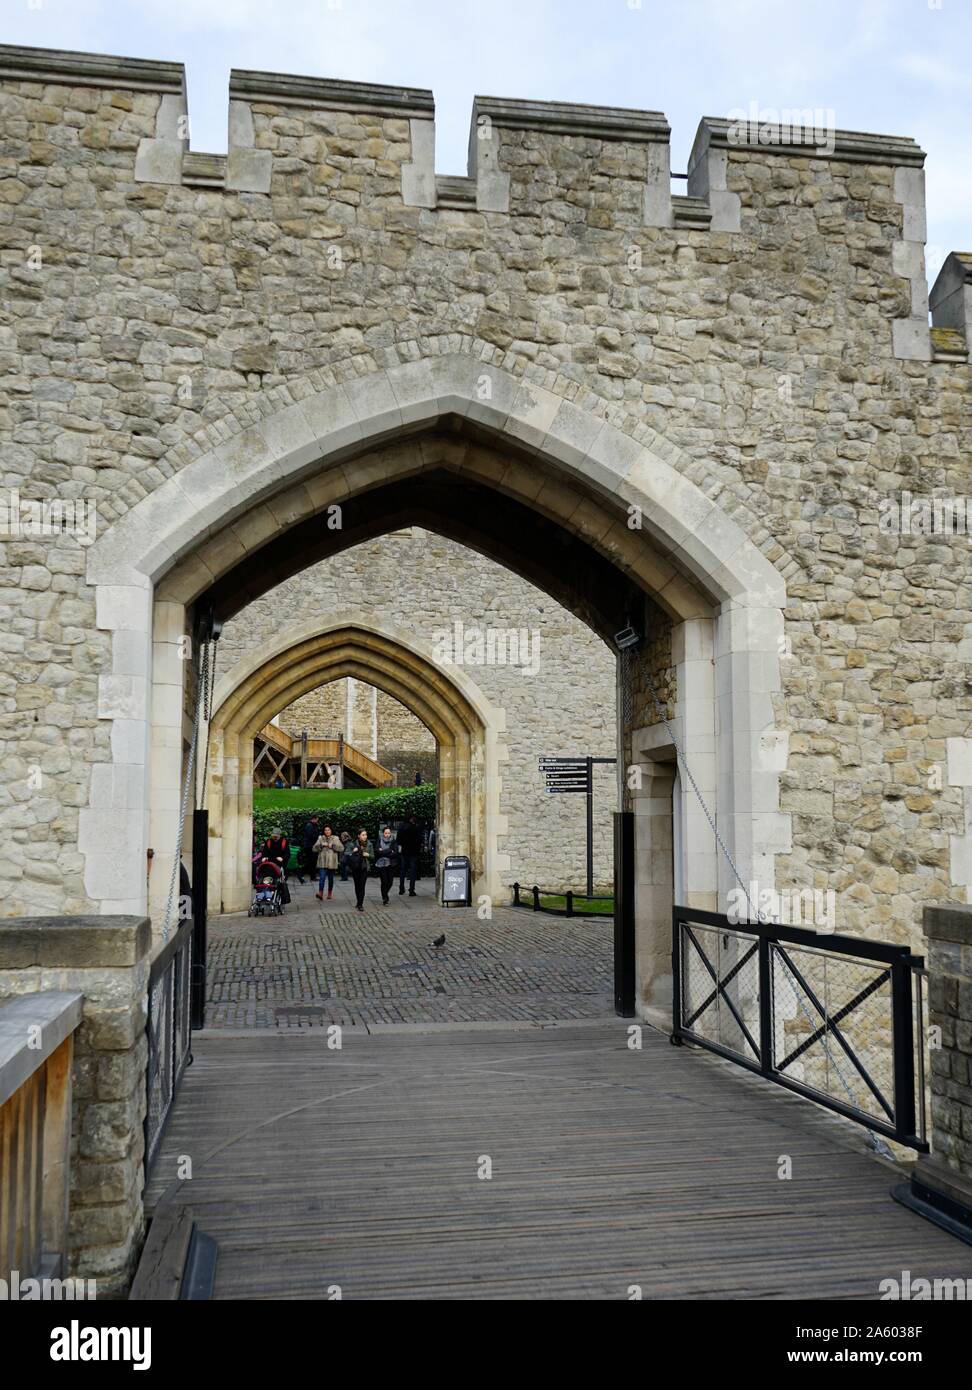 Viste intorno alla Torre di Londra, un castello storico situato sulla riva nord del fiume Tamigi nel centro di Londra. Completato nel XIV secolo. A partire dal XII secolo fino al XX secolo il castello fu utilizzato come prigione. Datata 2015 Foto Stock